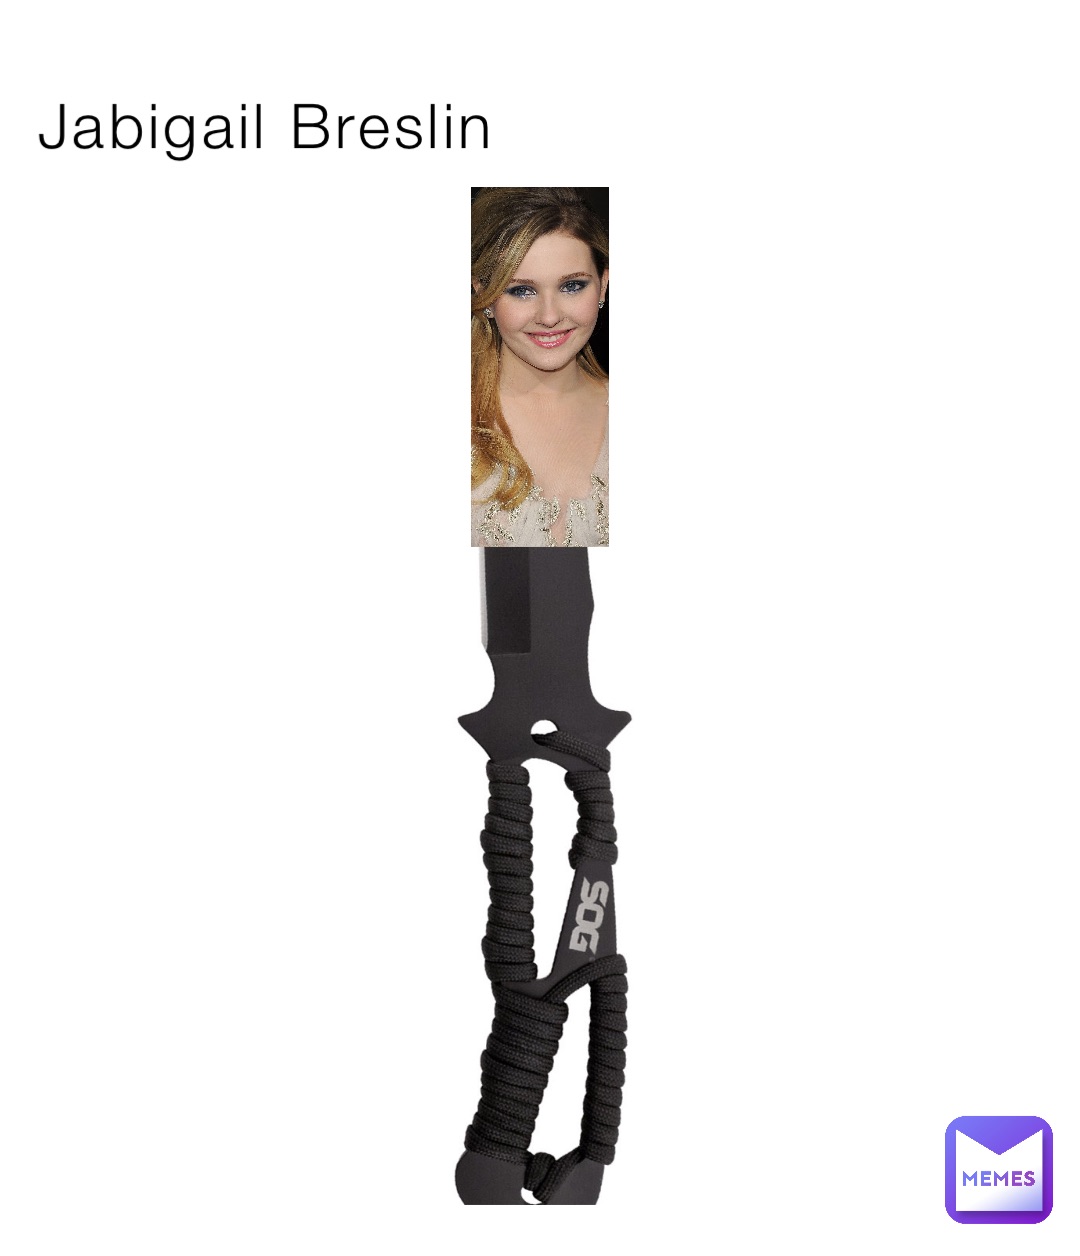 Jabigail Breslin